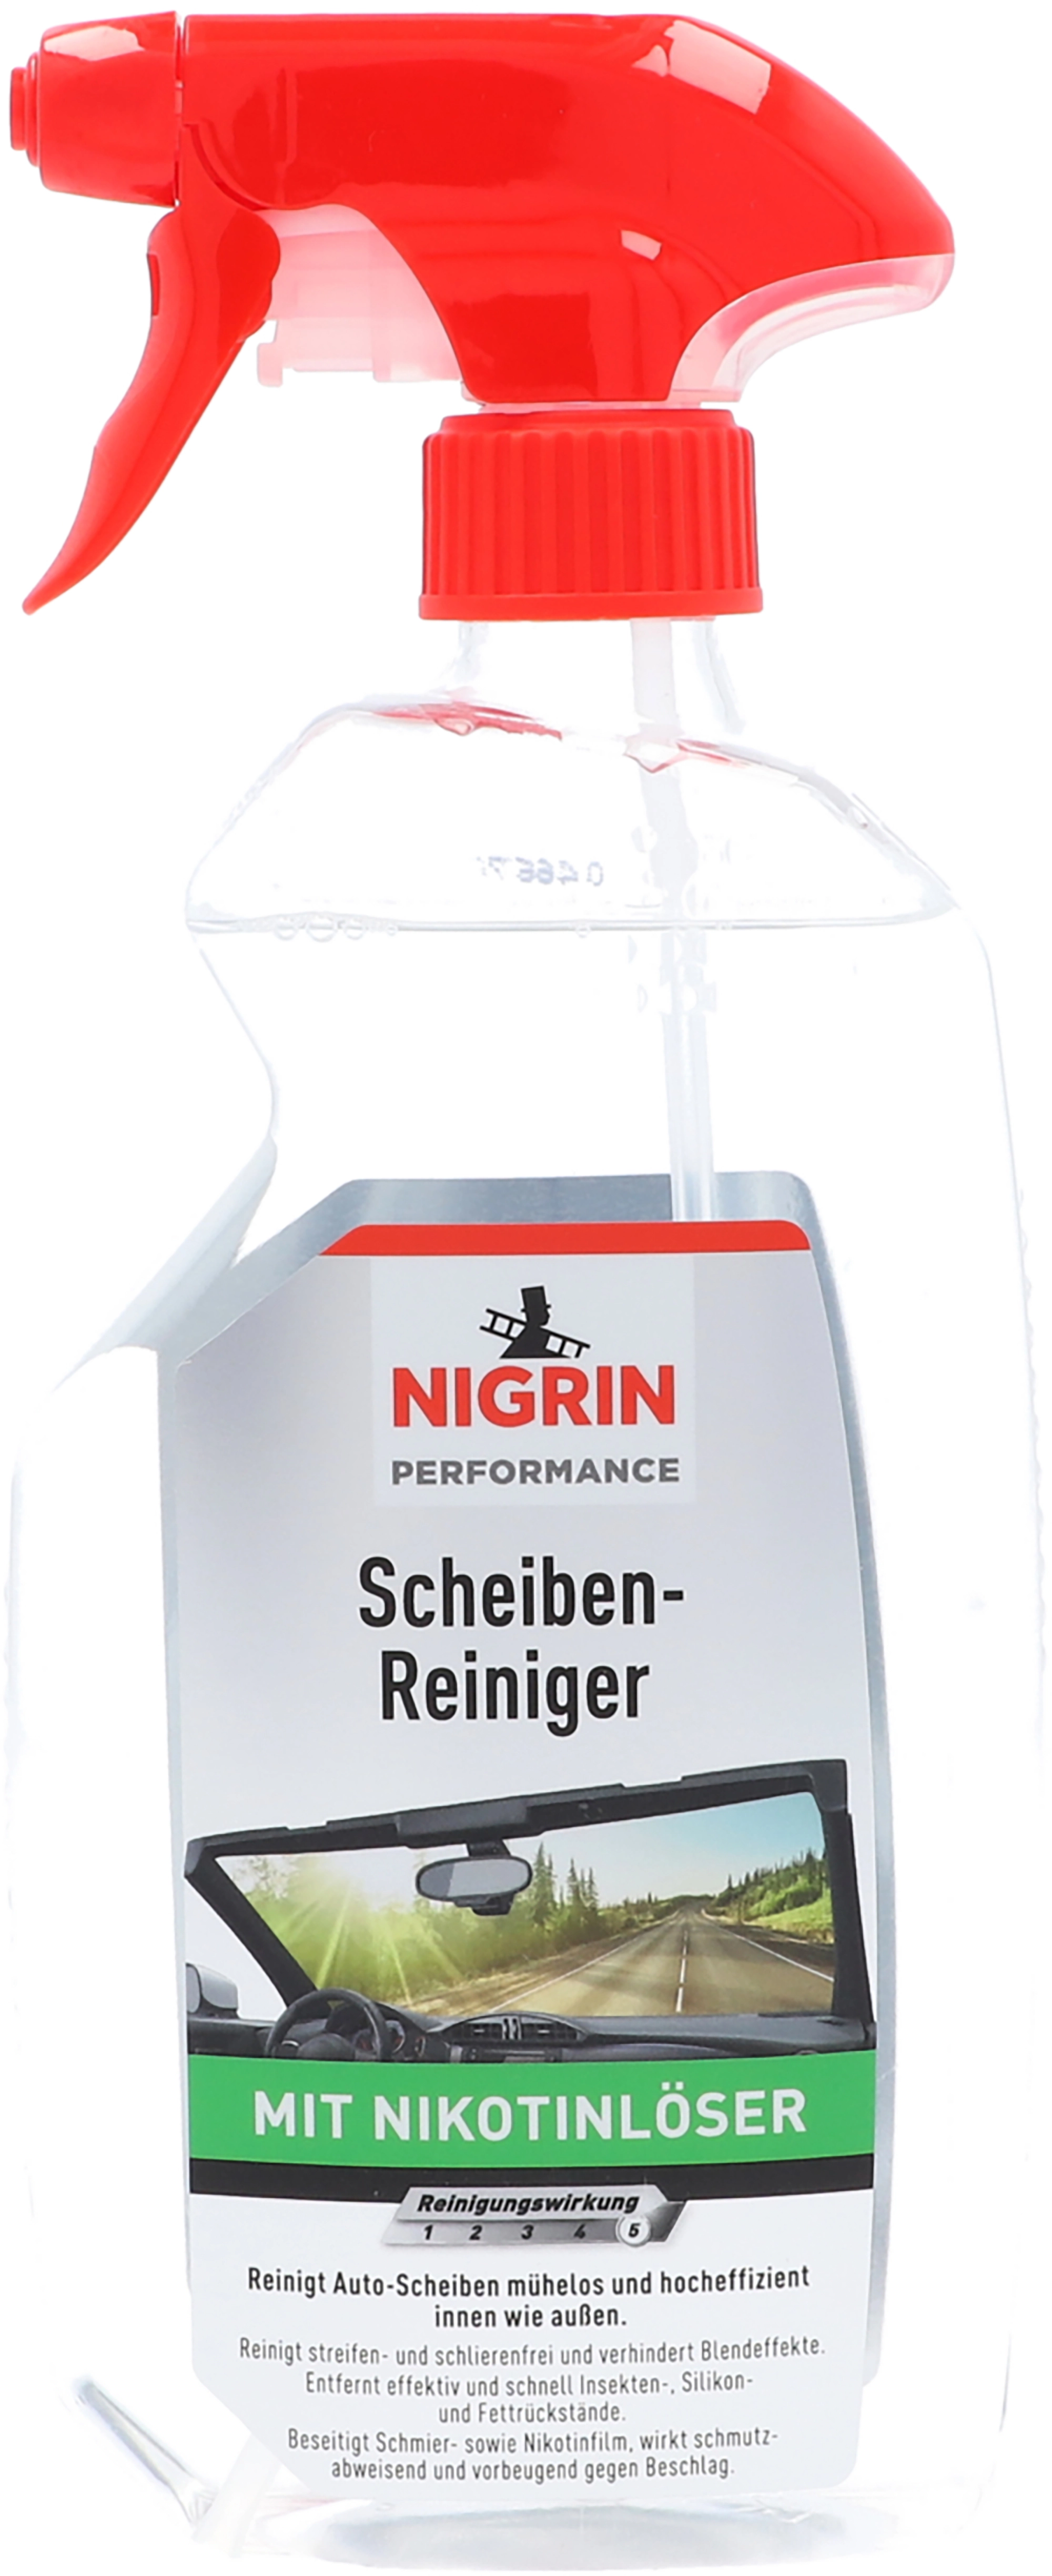 NIGRIN 71137 Scheiben-Reiniger, farblich sortiert Autopflege